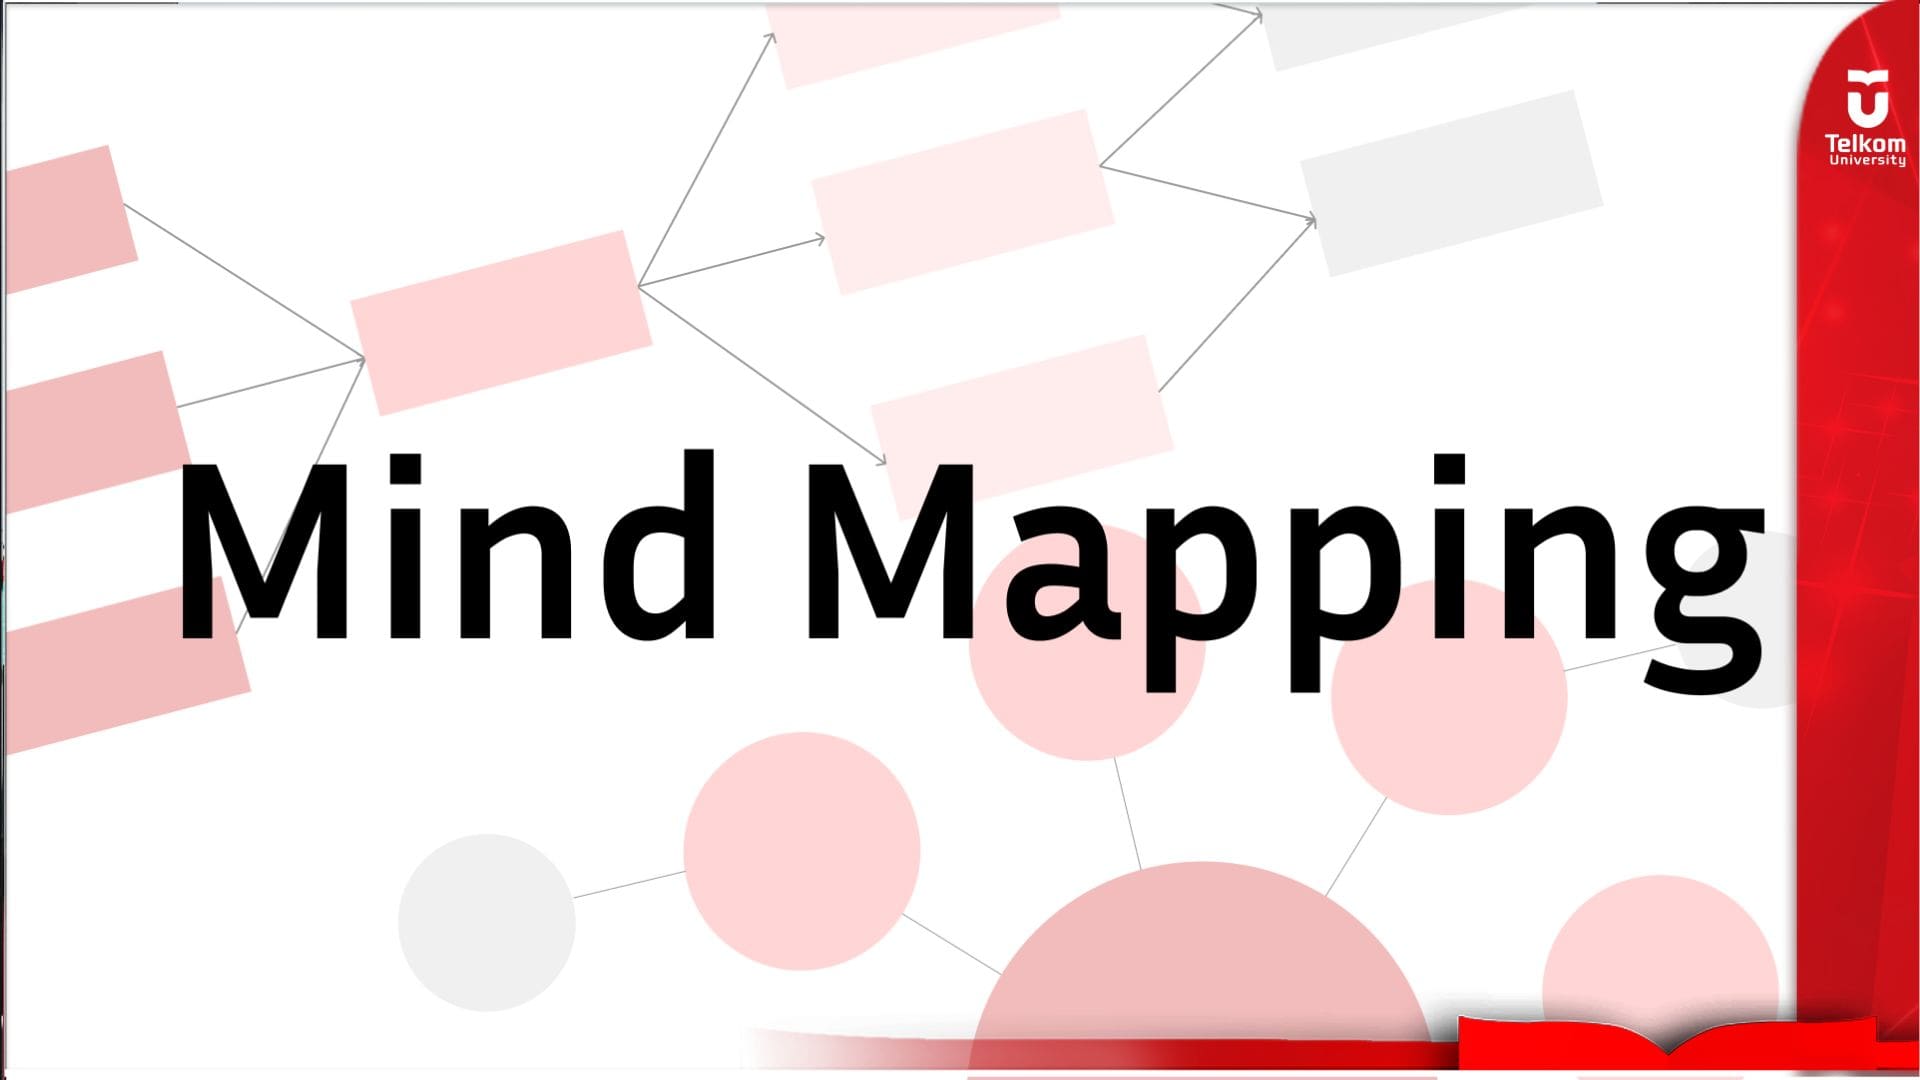 Bedah Suatu Konsep dengan Mind Mapping: Definisi, Manfaat, Jenis dan Cara Membuatnya 